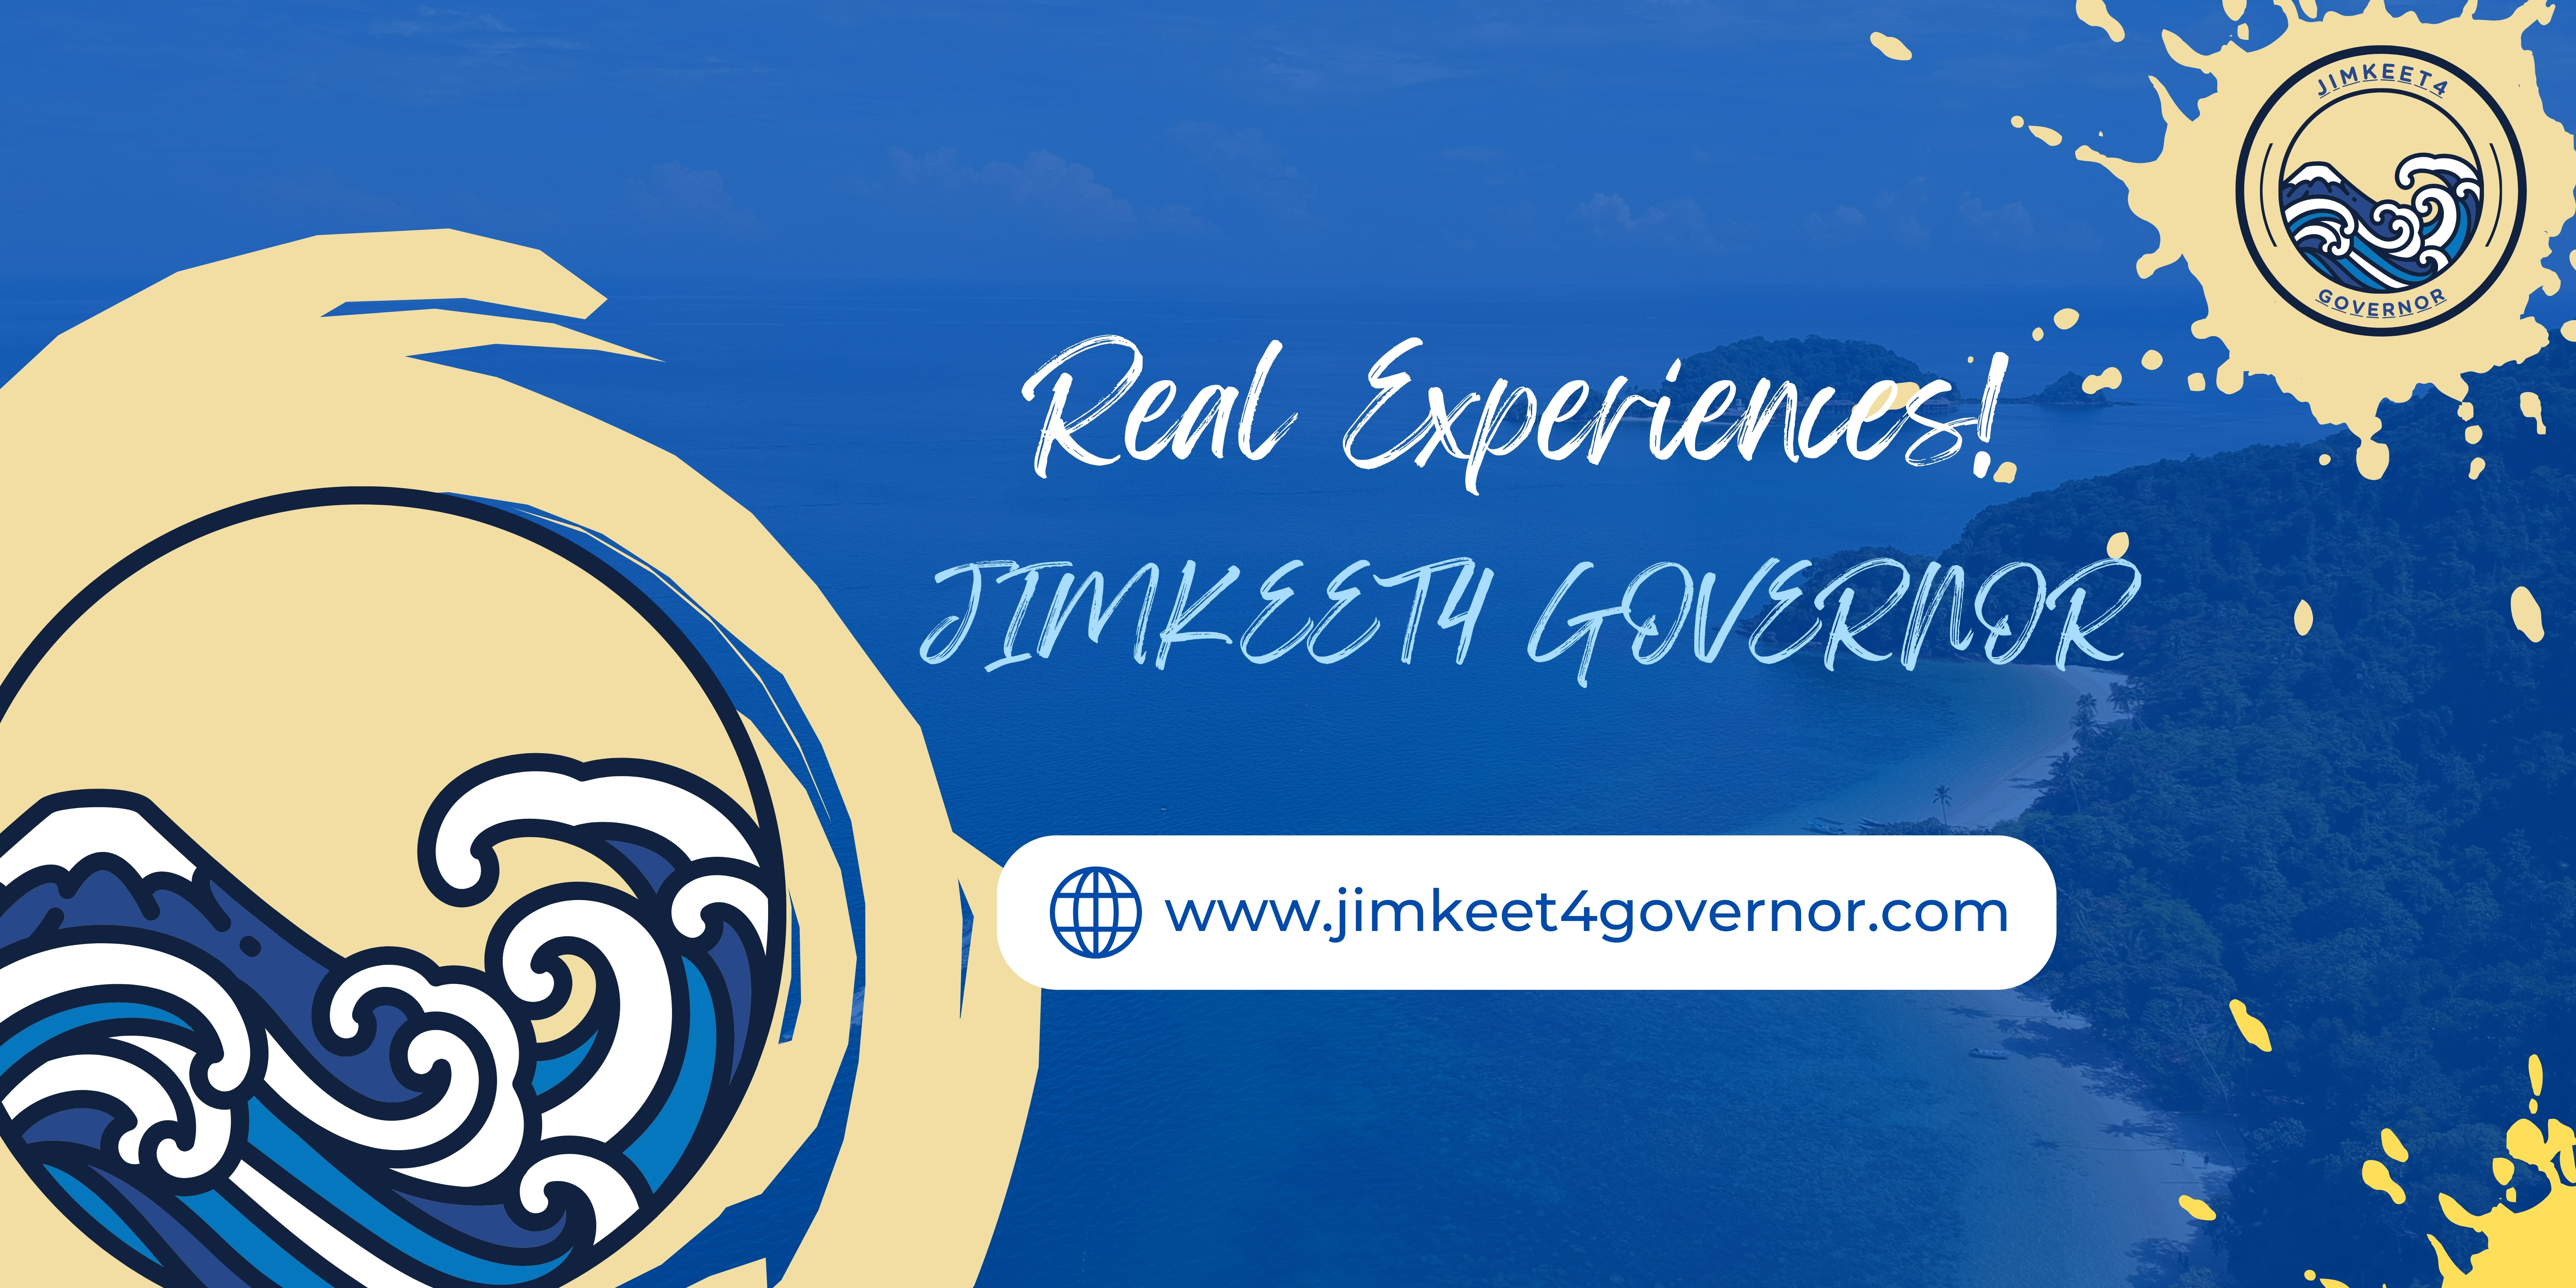 Jimkeet4 Governor Cover Image